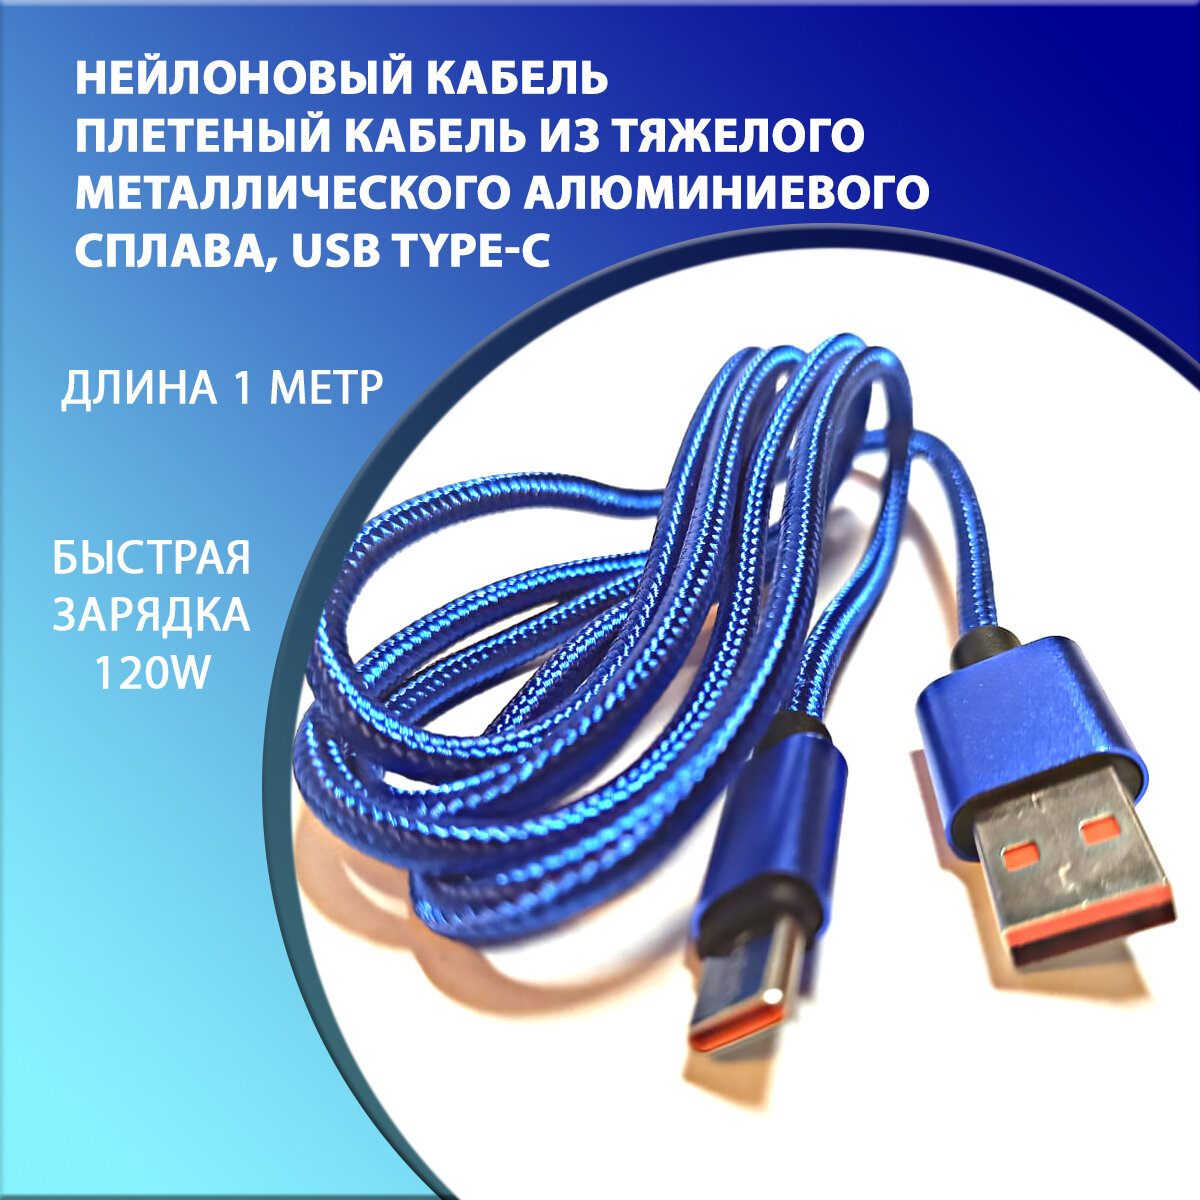 Нейлоновый кабель usb type-c синий